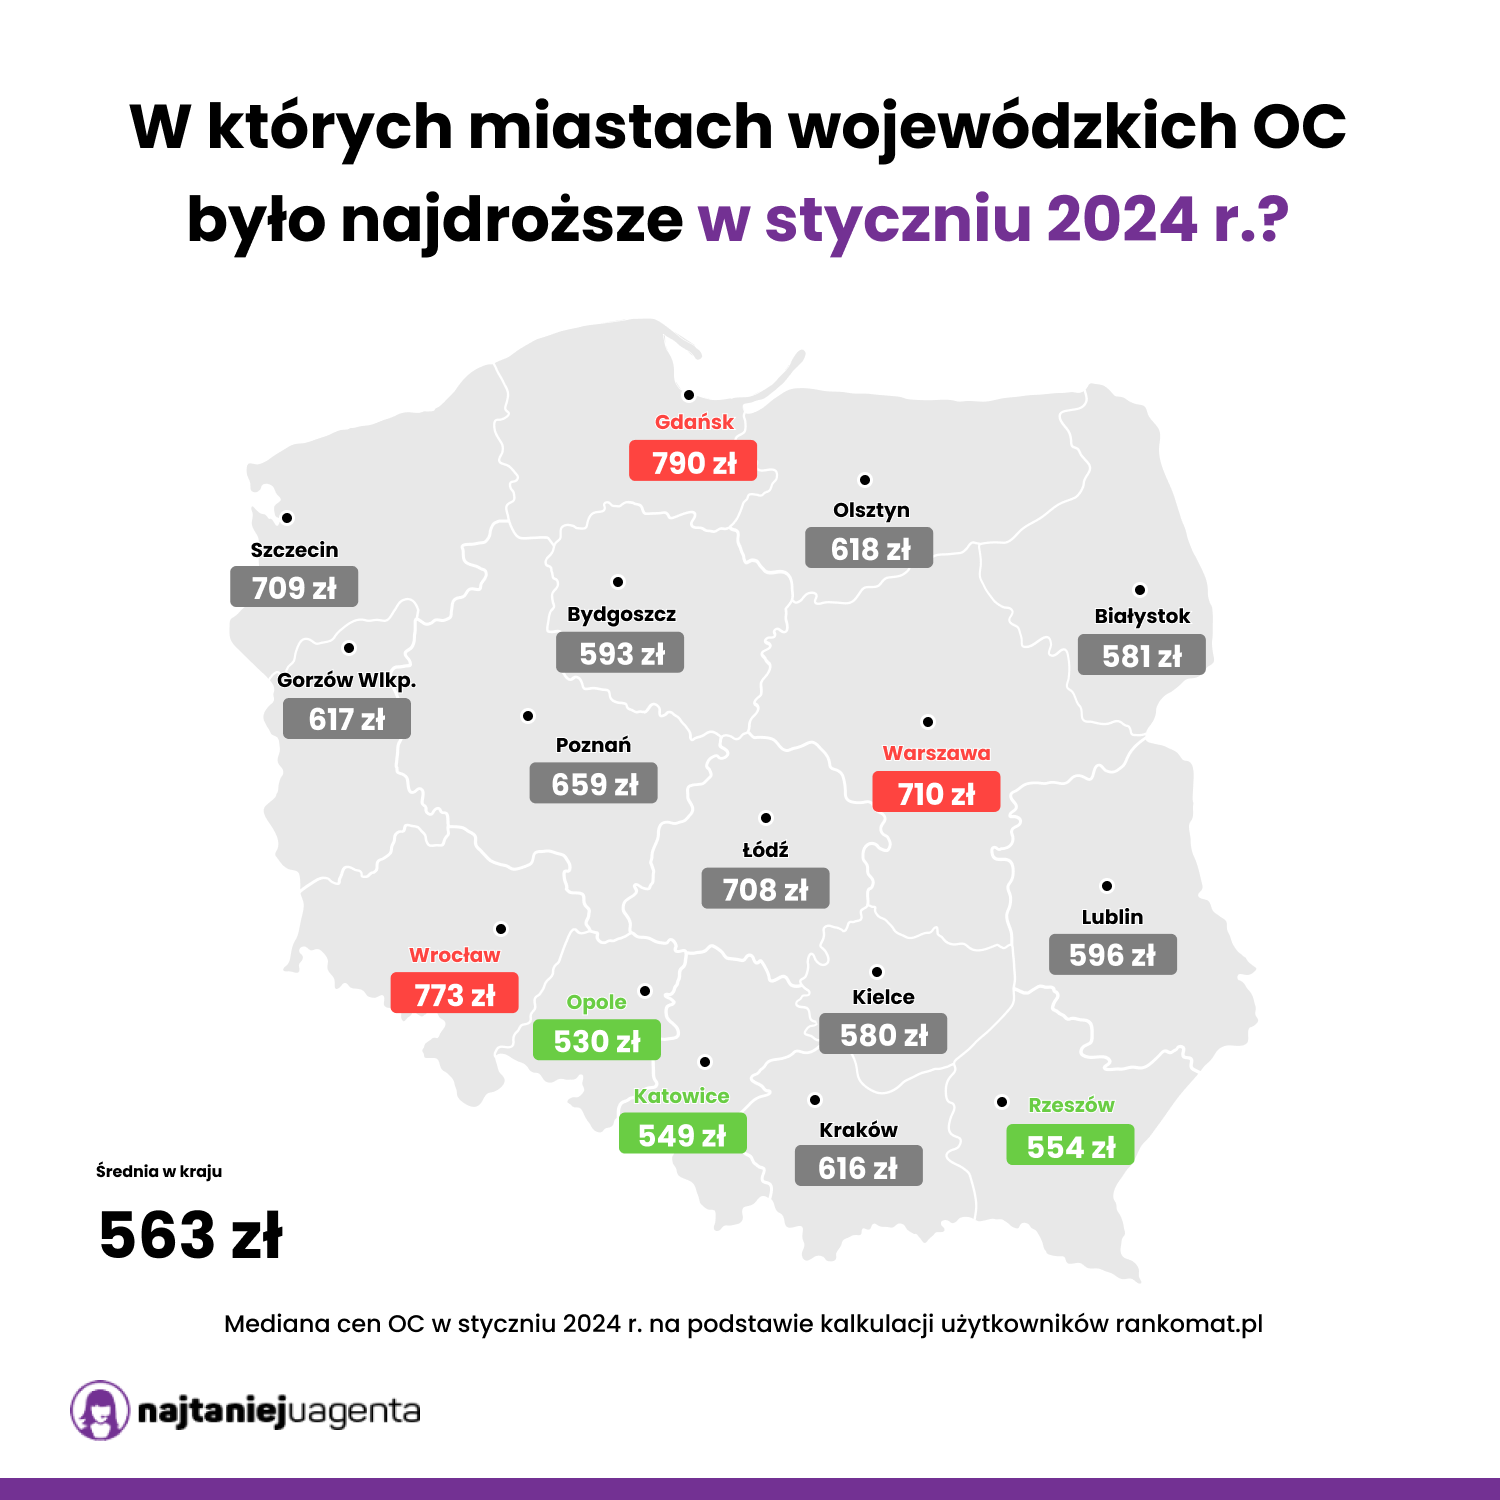 Cena OC w miastach wojewódzkich w styczniu 2024 r.